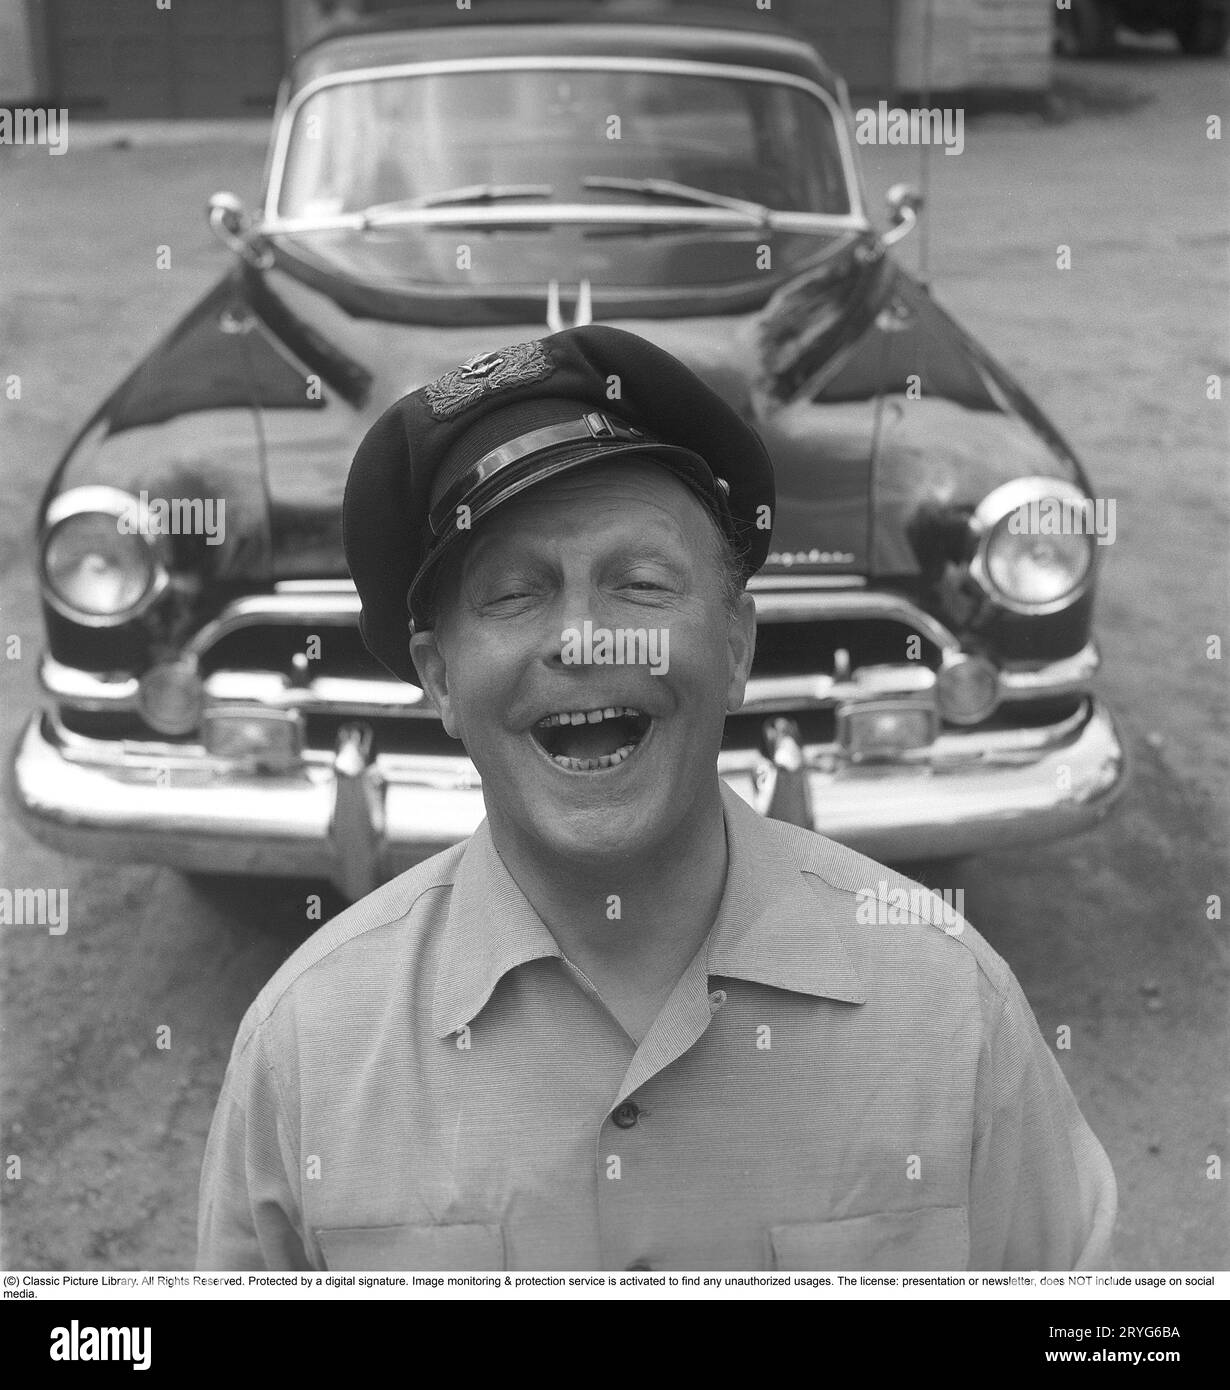 Negli anni '1950 Un uomo vicino alla sua auto e si vede essere felice e sorridente. Forse non così strano come è il proprietario di un'impressionante auto americana del marchio Chrysler Imperial. Negli anni '1950, molti dettagli sono stati cromati: griglia, paraurti, modanature. Svezia 1951. Kristoffersson rif. BP30-8 Foto Stock